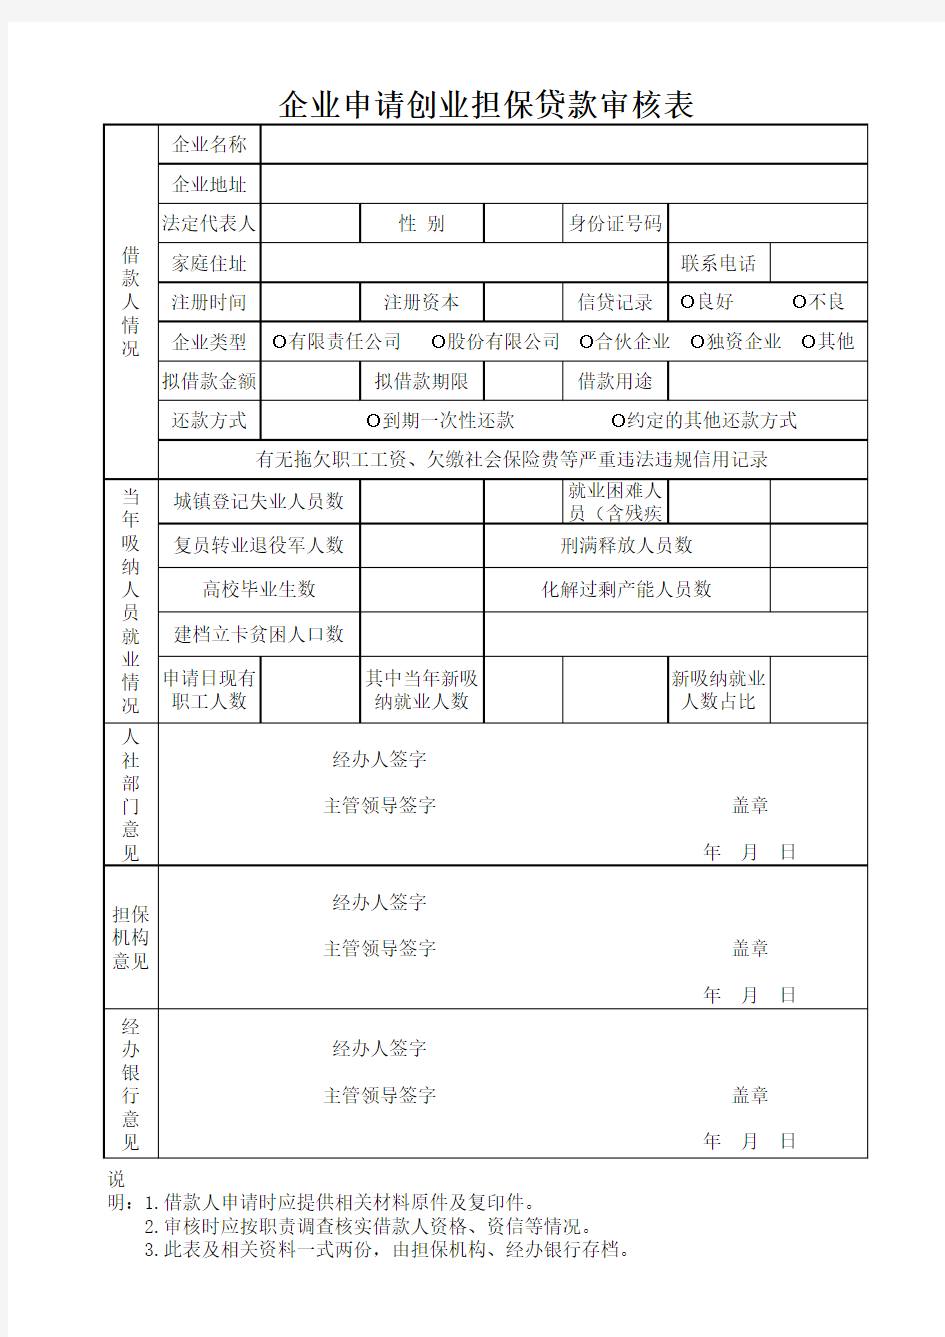 榆中县企业申请创业担保贷款审核表